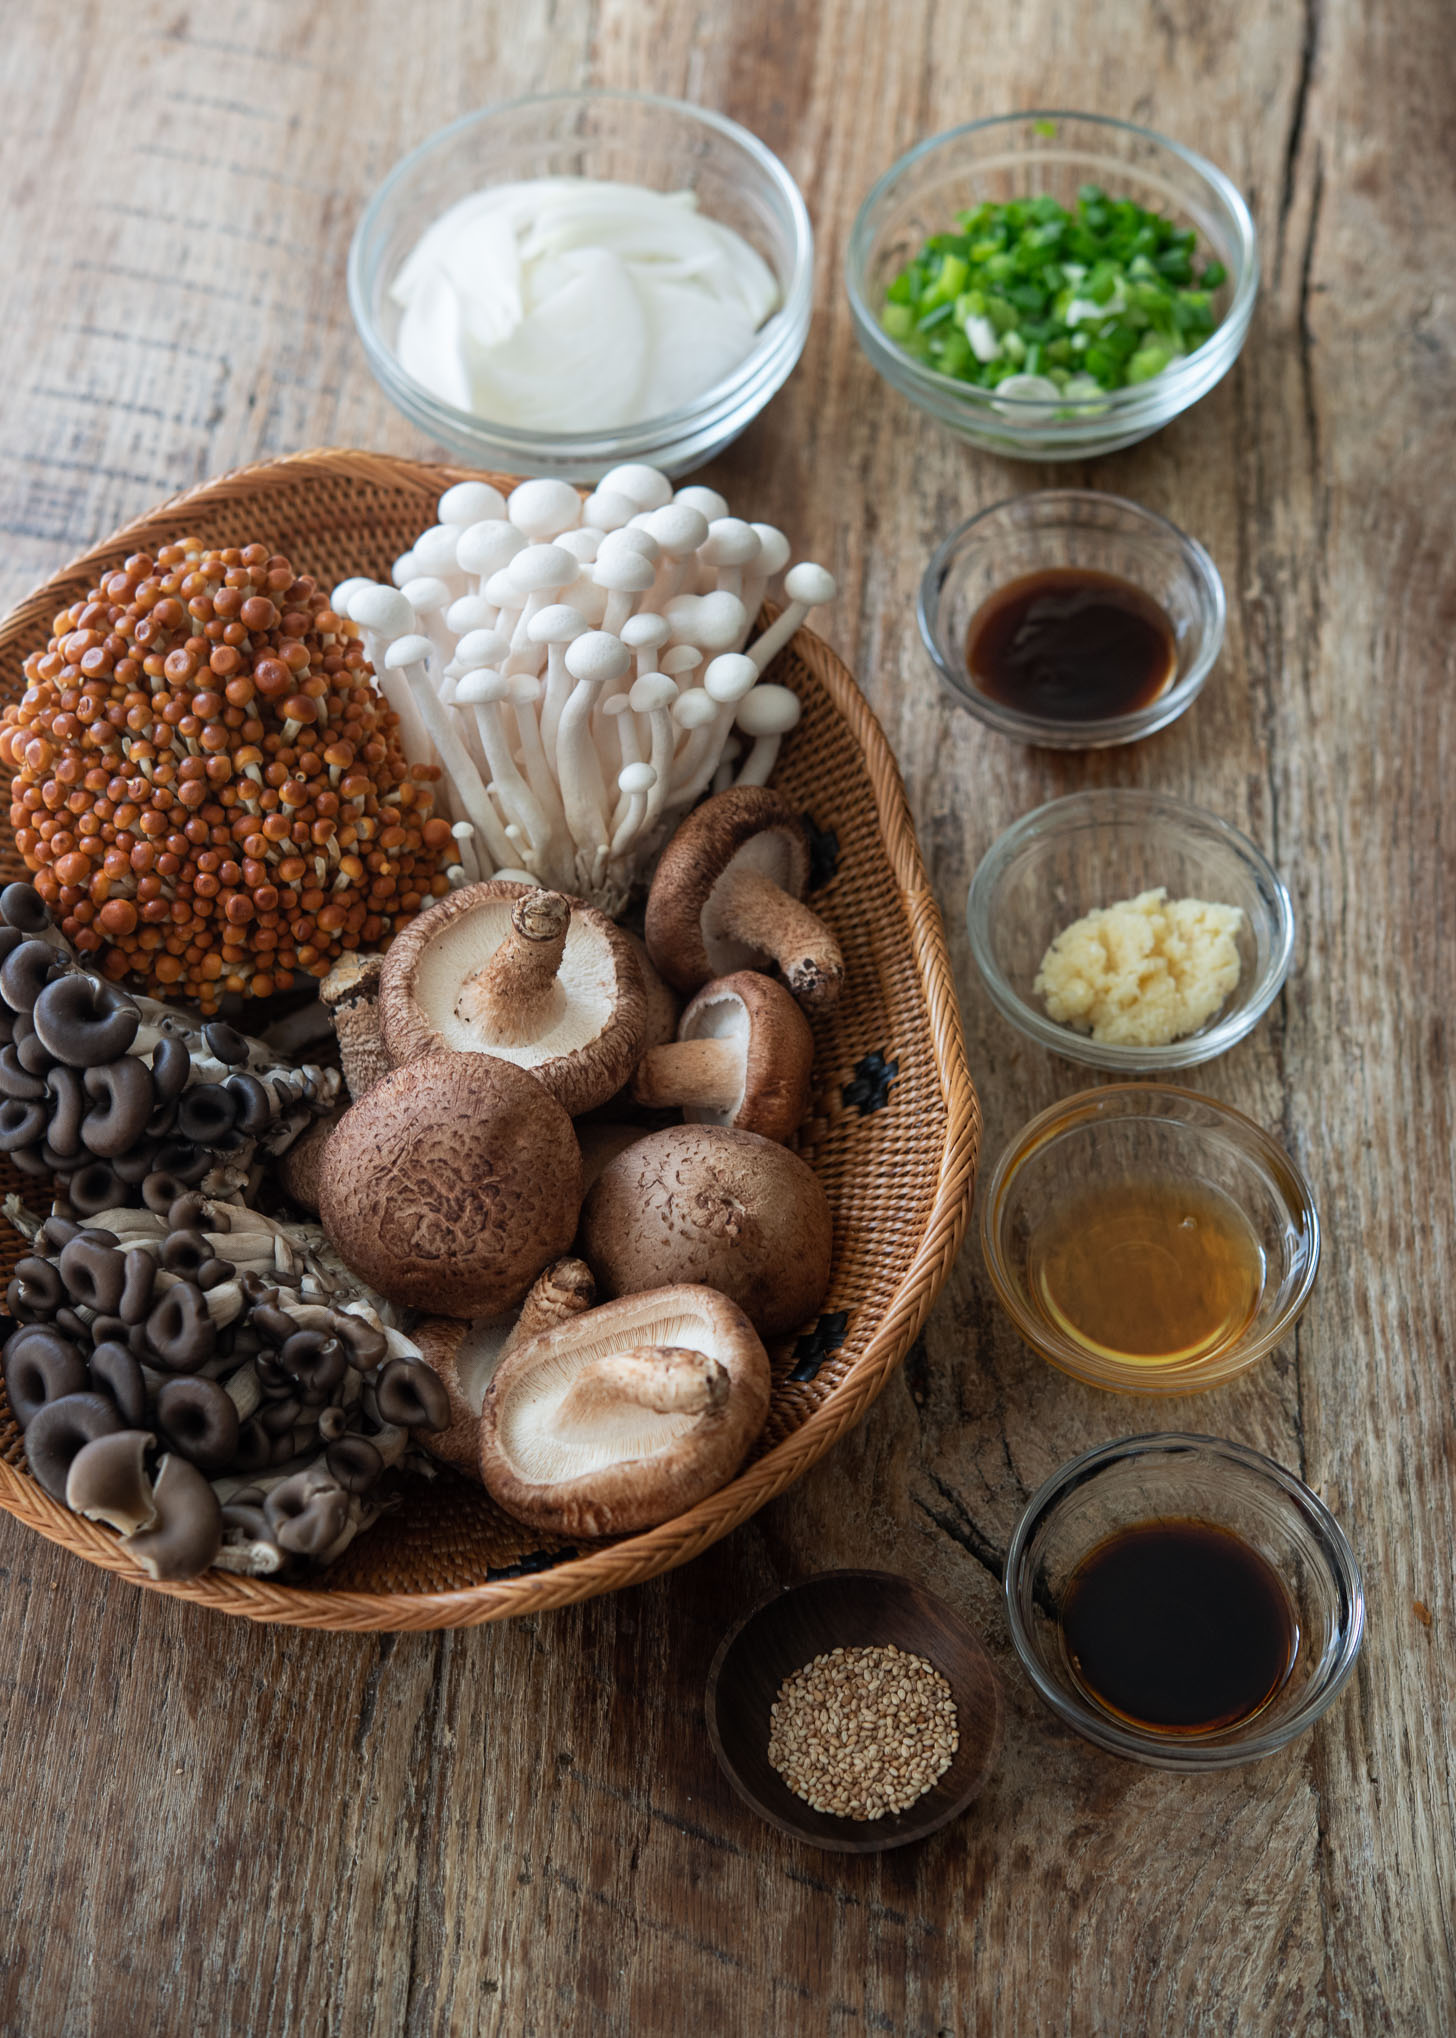 Mushroom stir-fry ingredients